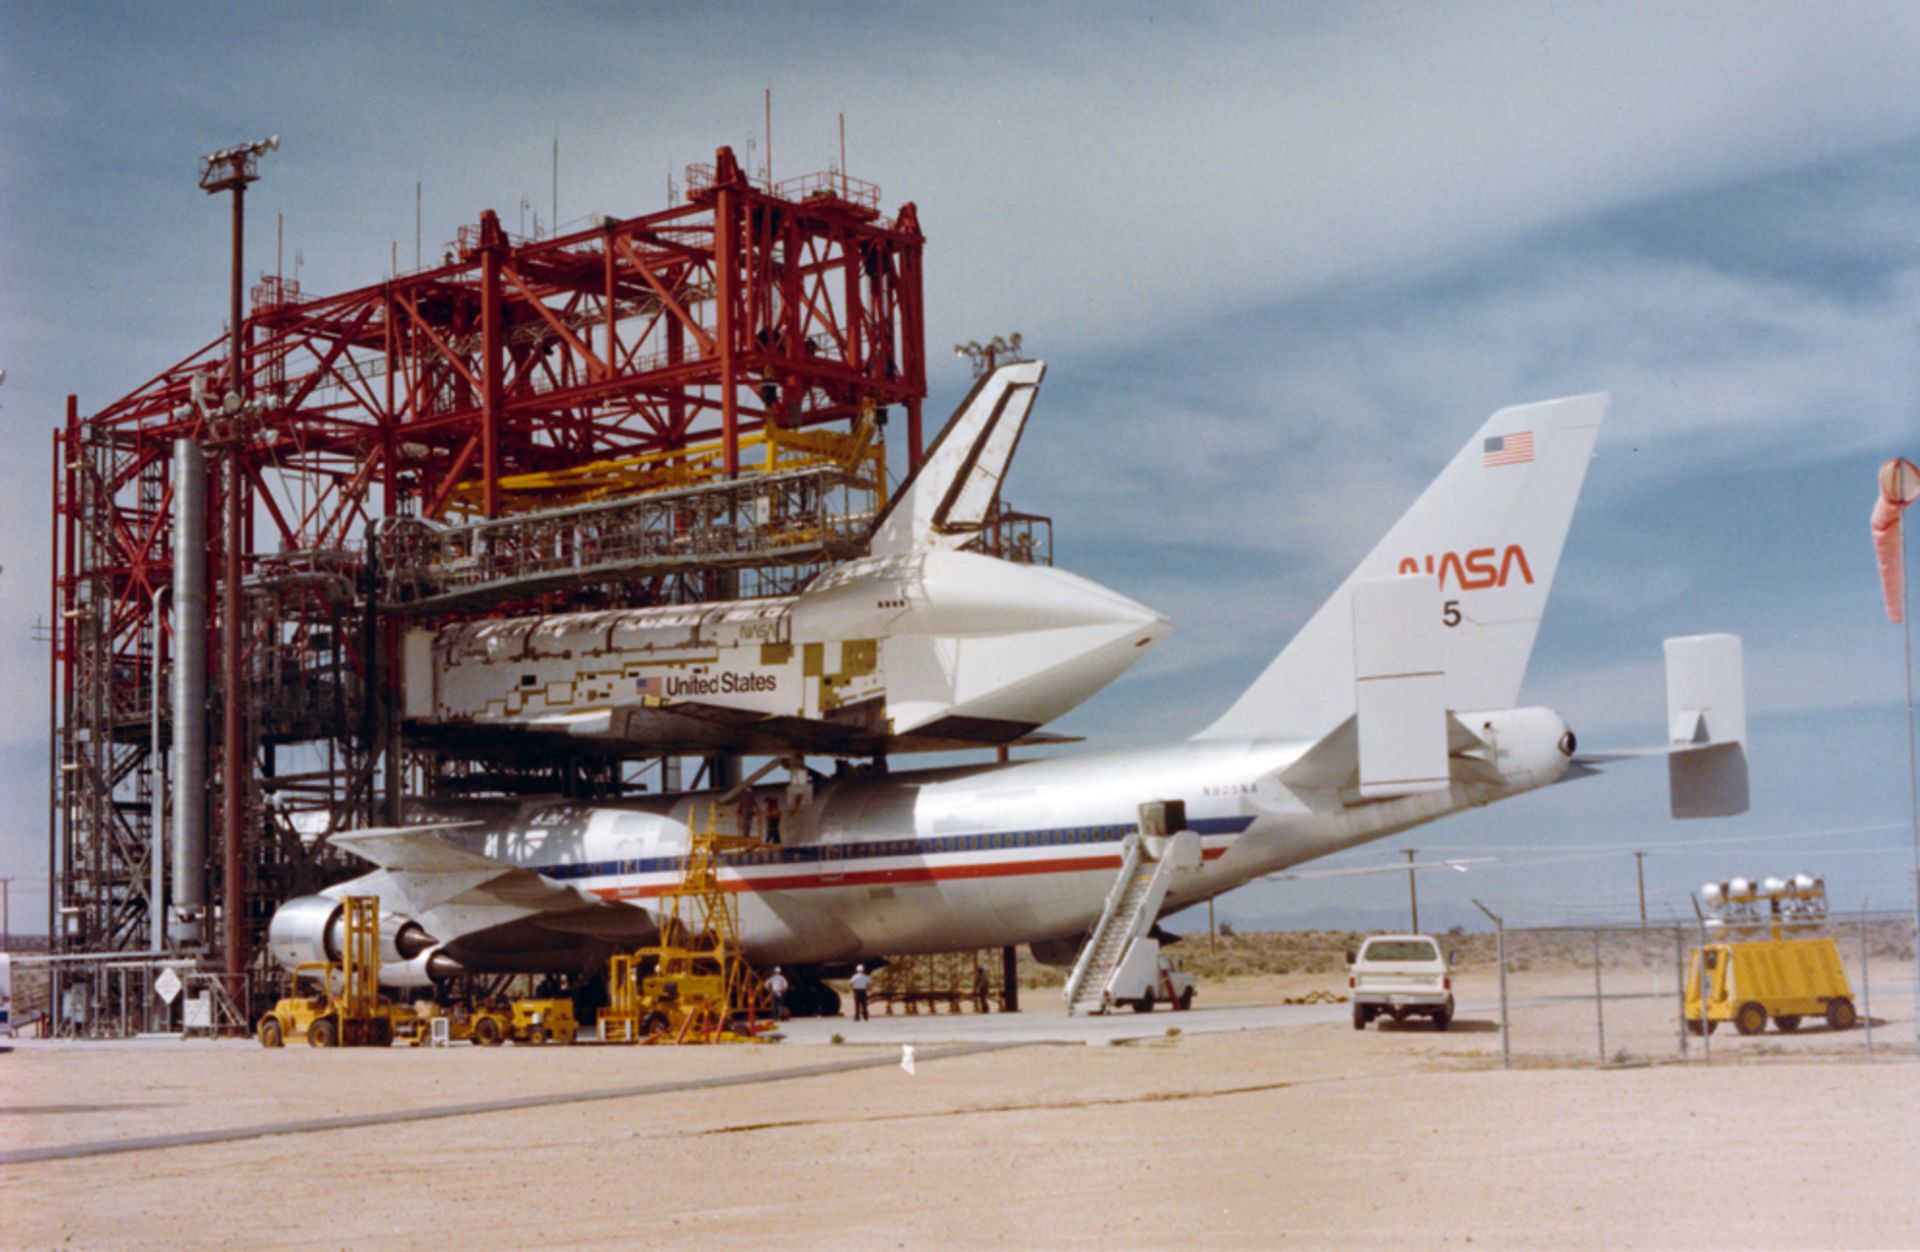 NASA, Exzellenter Blick in die Wartungshalle des ersten flugunfähigen Prototyps des Space Shuttles